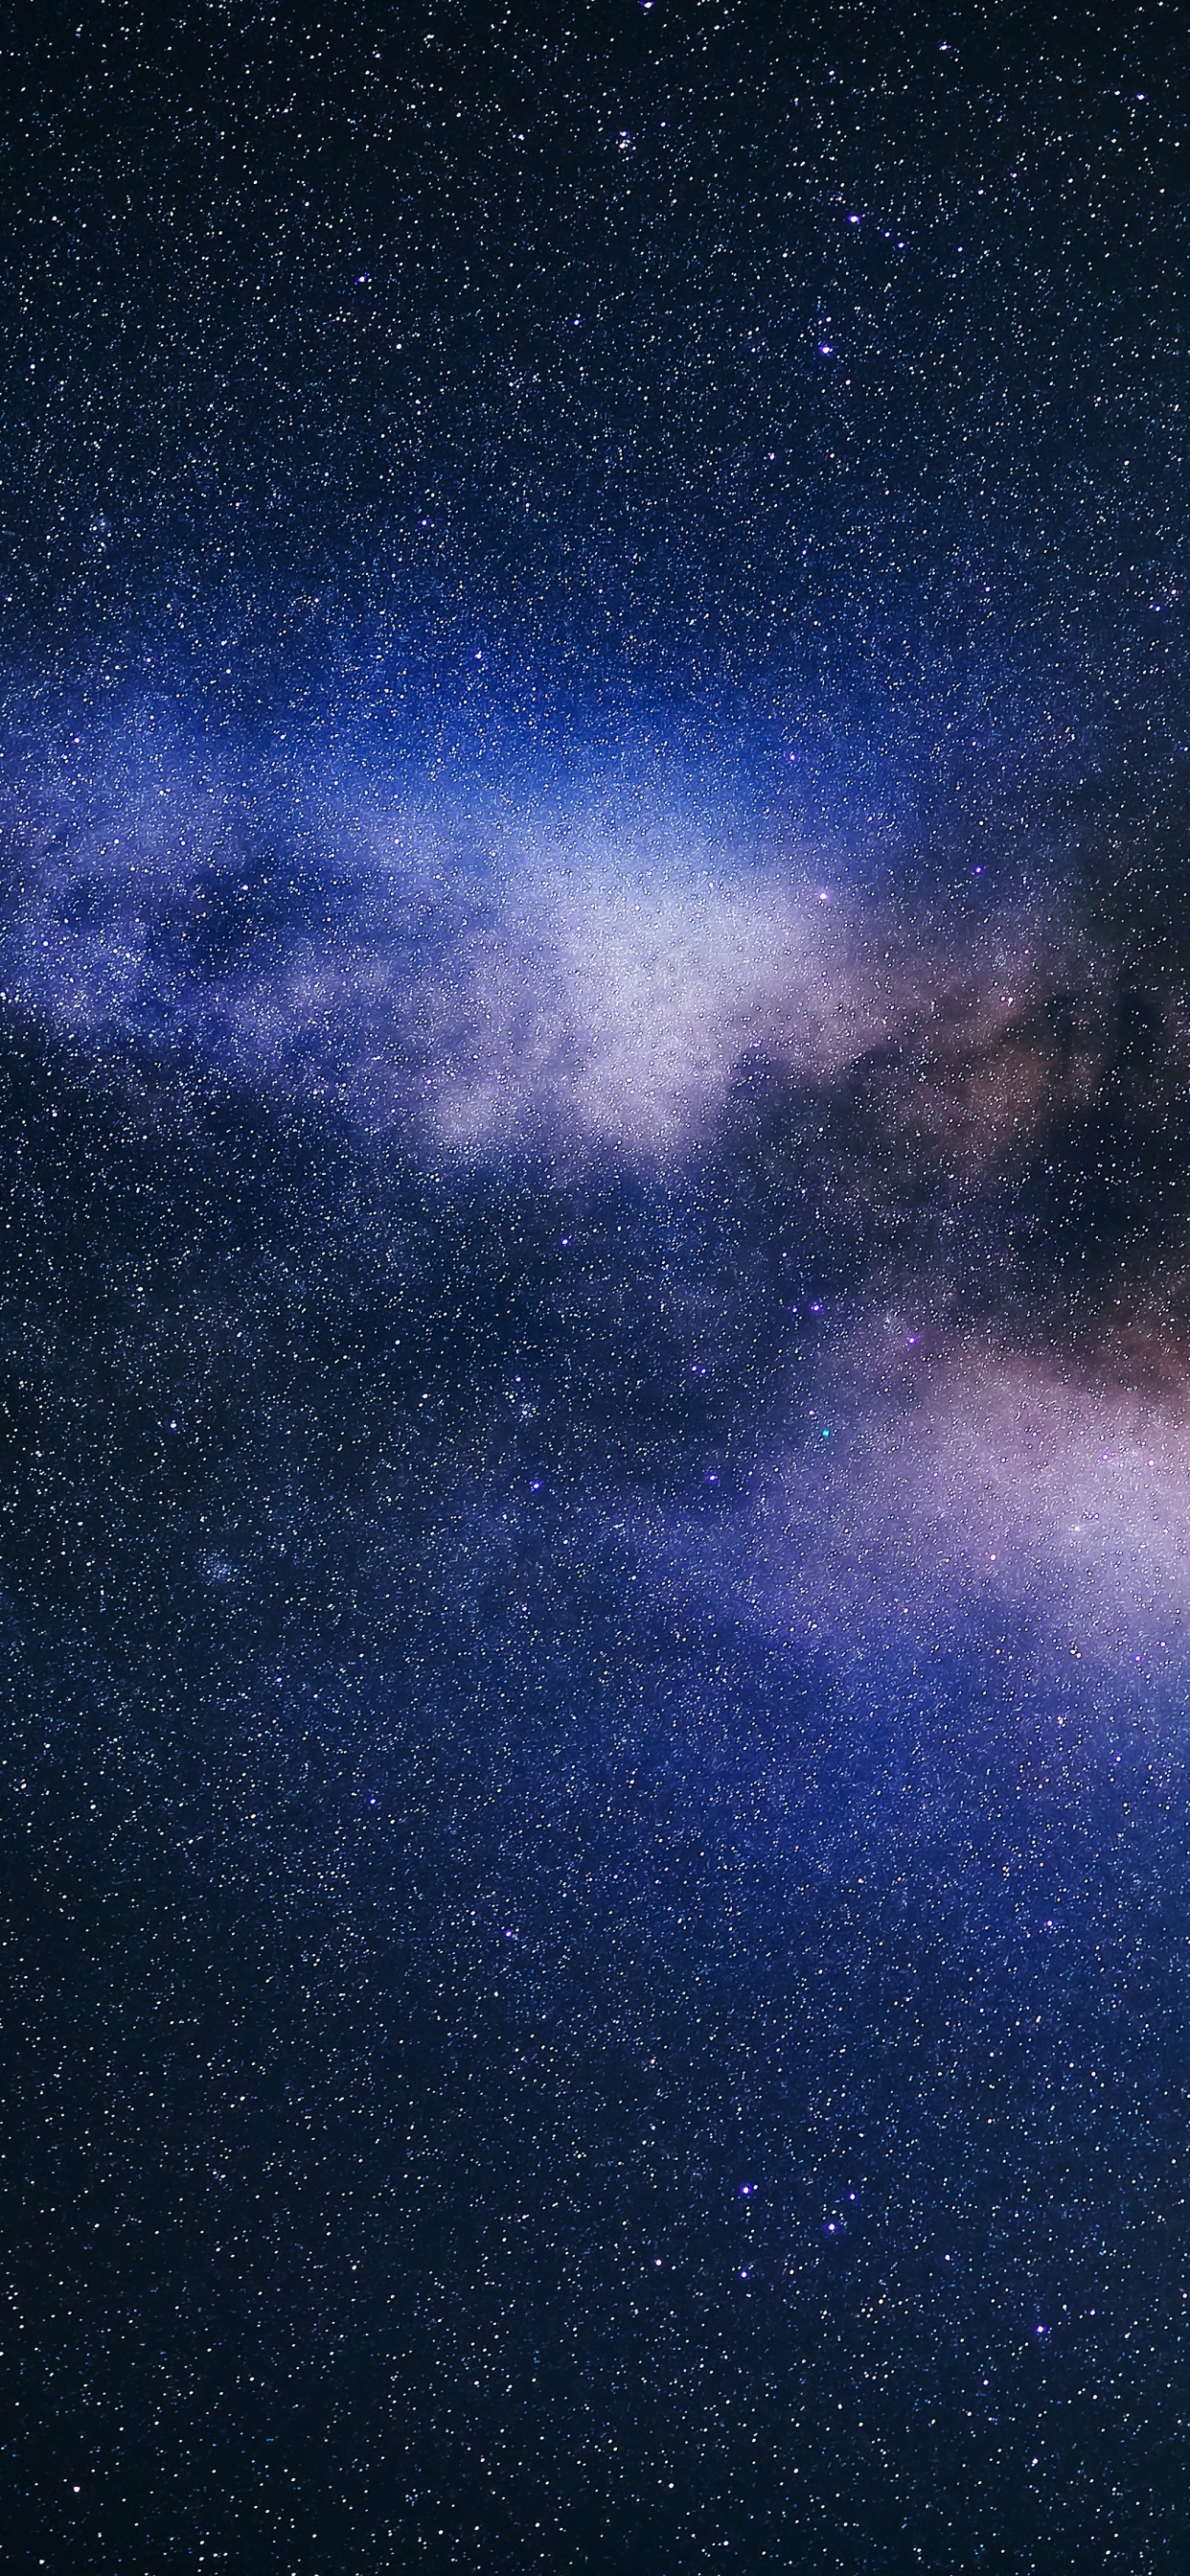 Hình nền Milky Way - Bạn sẽ không ngừng phấn khích với sự lung linh và tĩnh lặng của vũ trụ. Hình nền đẹp nhất về đường Ngân Hà, góp phần làm cho điện thoại của bạn trở nên độc đáo và nổi bật. Hãy xem ngay để cảm nhận sức mạnh và vẻ đẹp của vũ trụ.